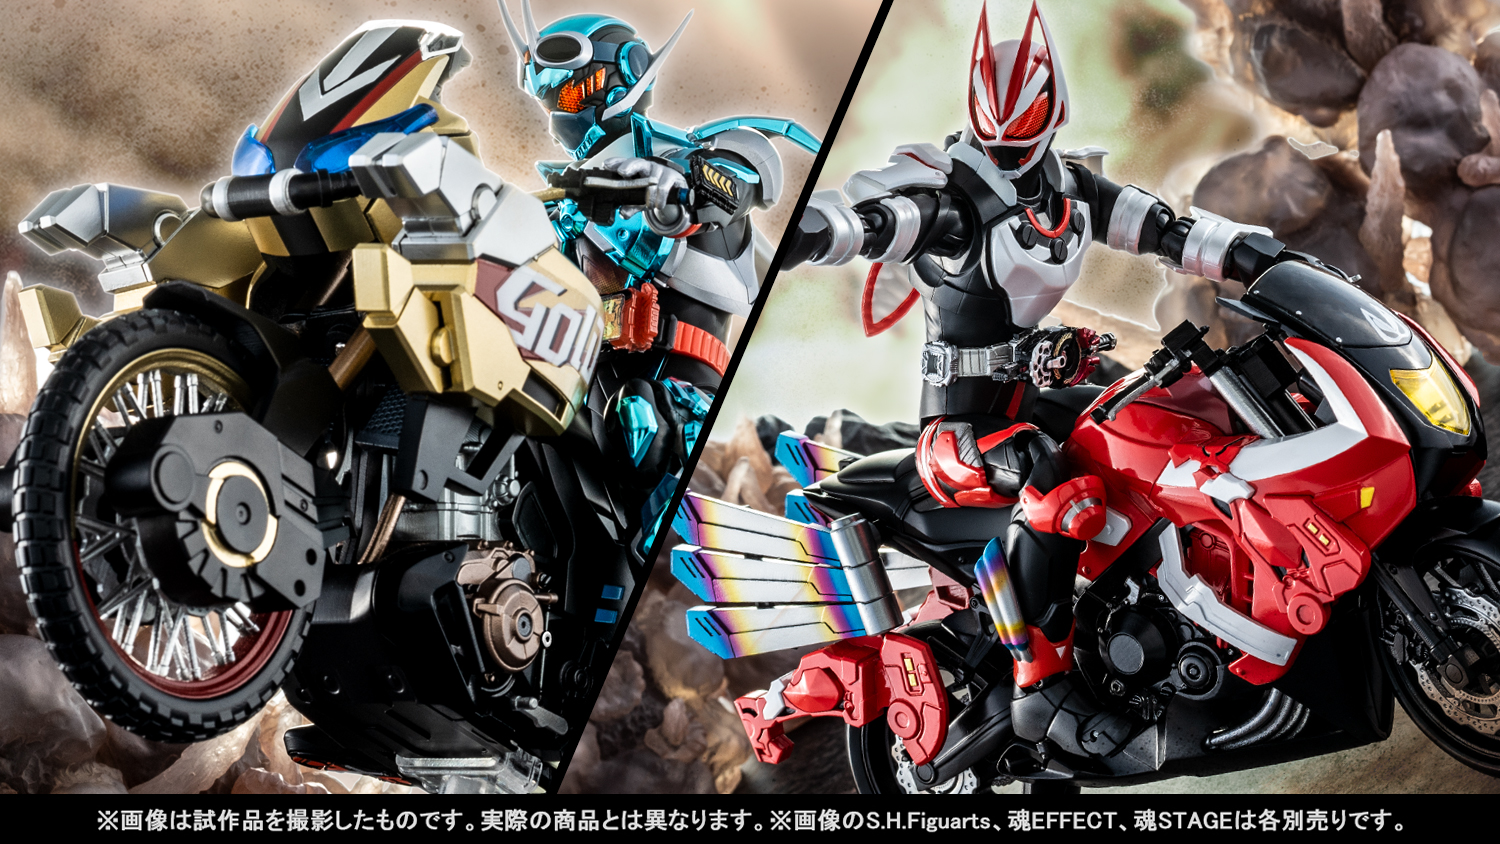 假面骑士" 系列最新两款机器的精彩镜头！Tamashii web shop正在订购中。S.H.Figuarts "GOLDDASH" 和 "BOOSTRIKER" 新镜头介绍。